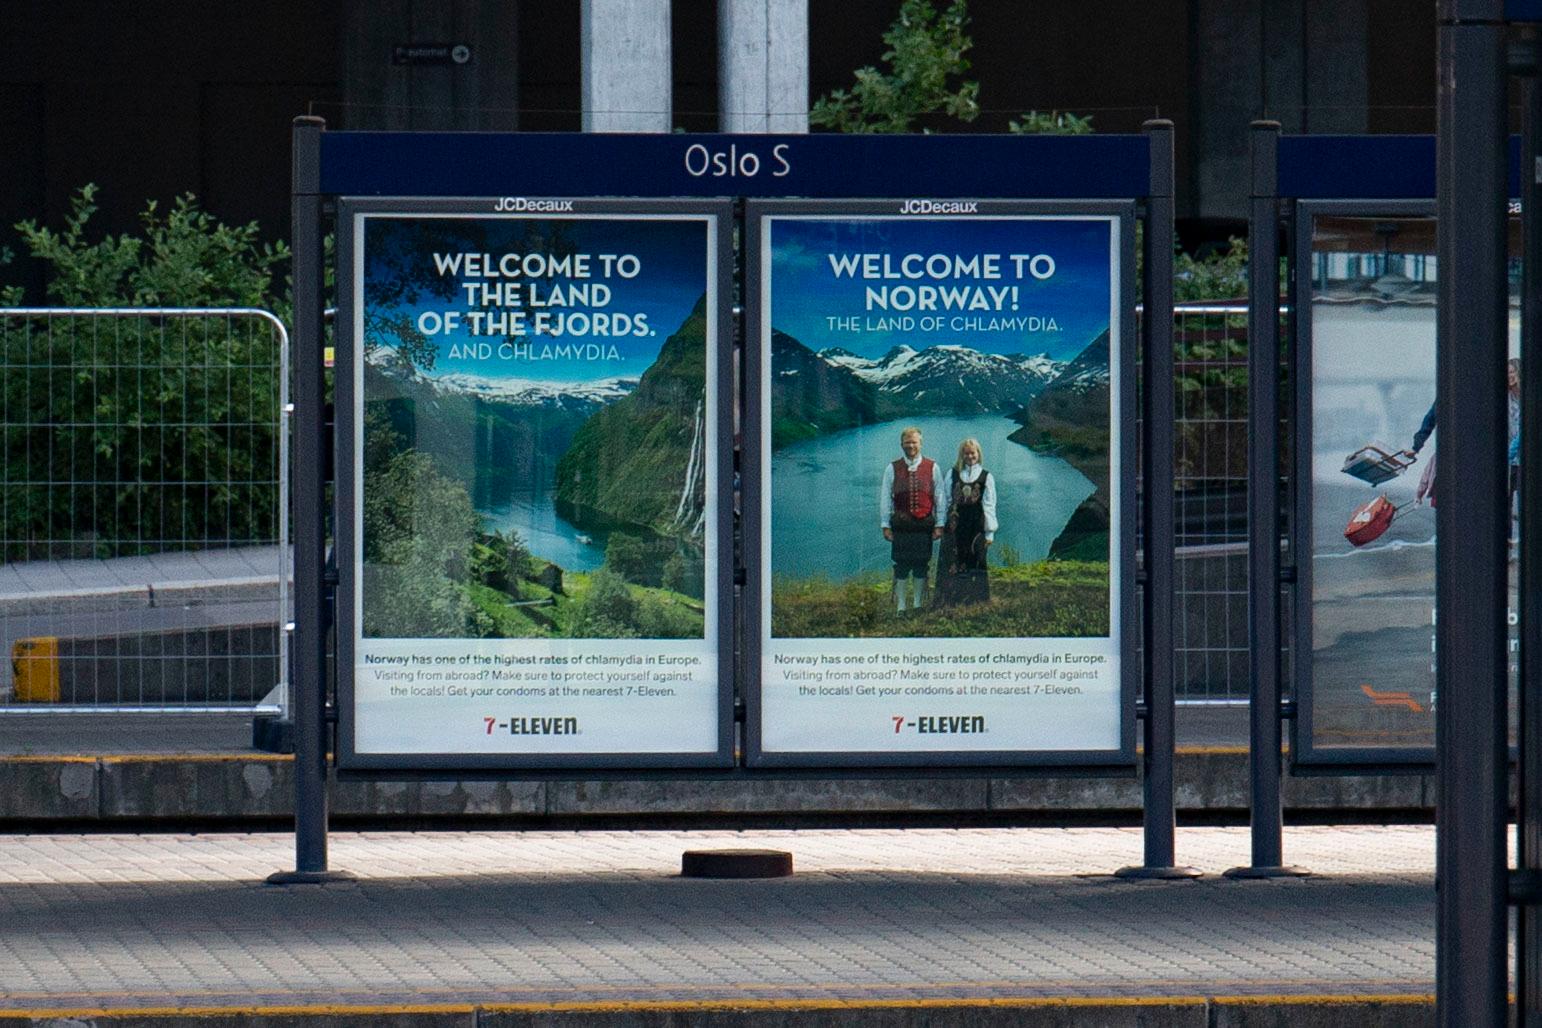  «Velkommen til Norge! Klamydia-landet!» Kioskkjeden 7-Eleven ønsker reisende velkommen til Oslo S med sine nye reklameplakater som inneholder Norgesreklame – og info om klamydiabeskyttelse. 